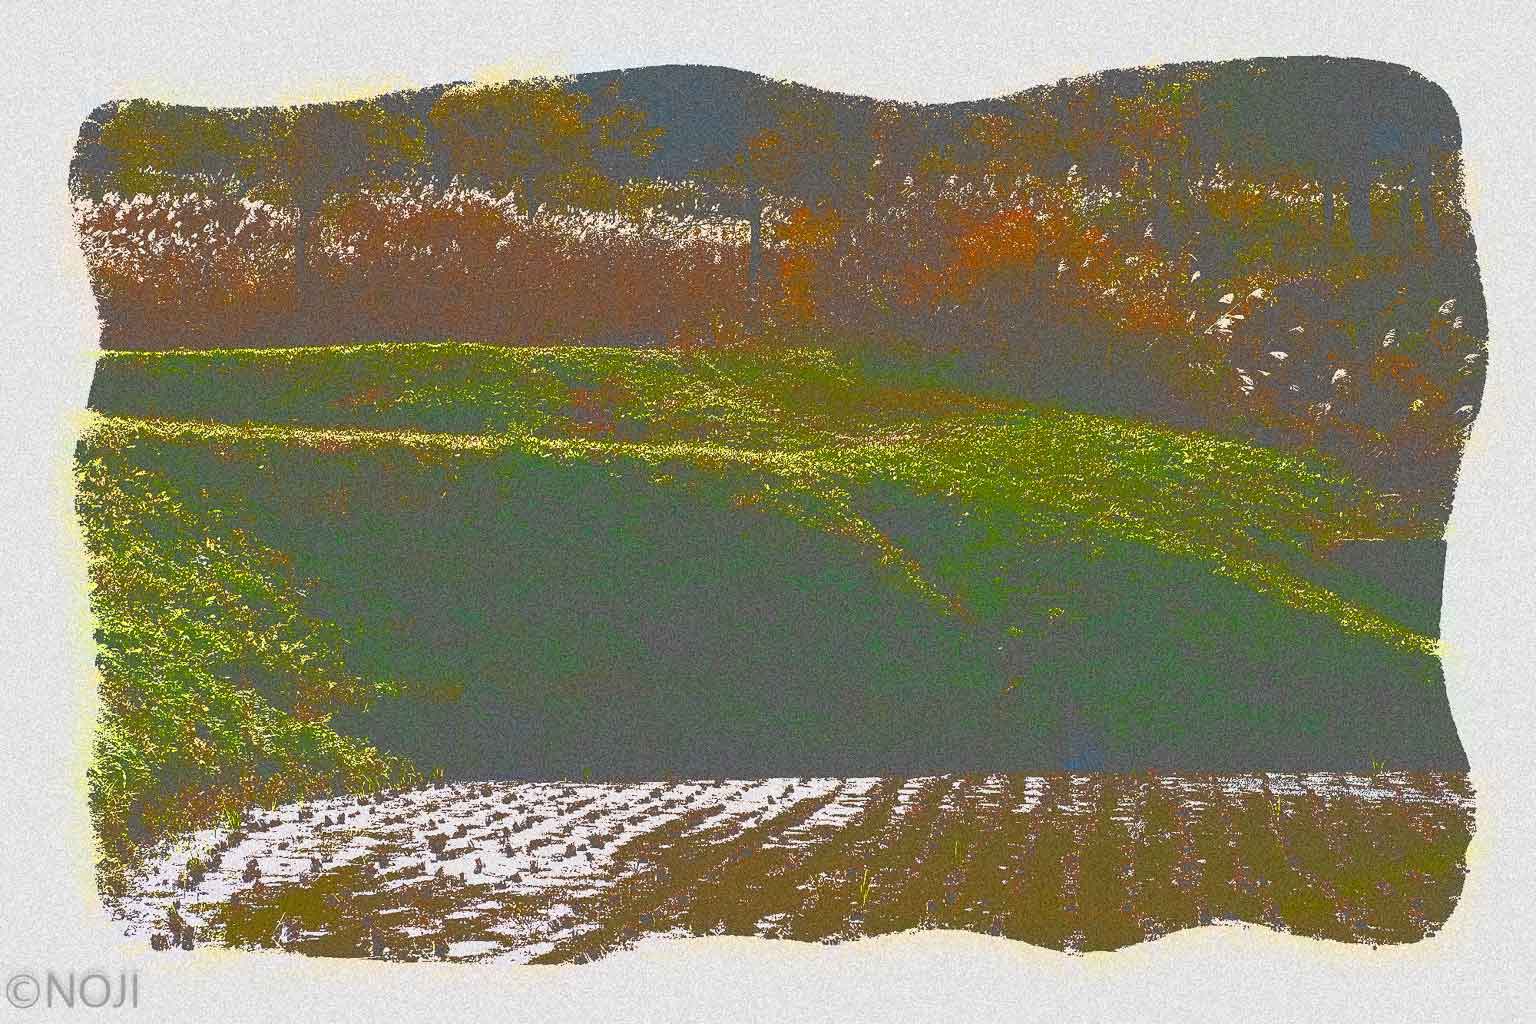 xtz0013 Rice field in November